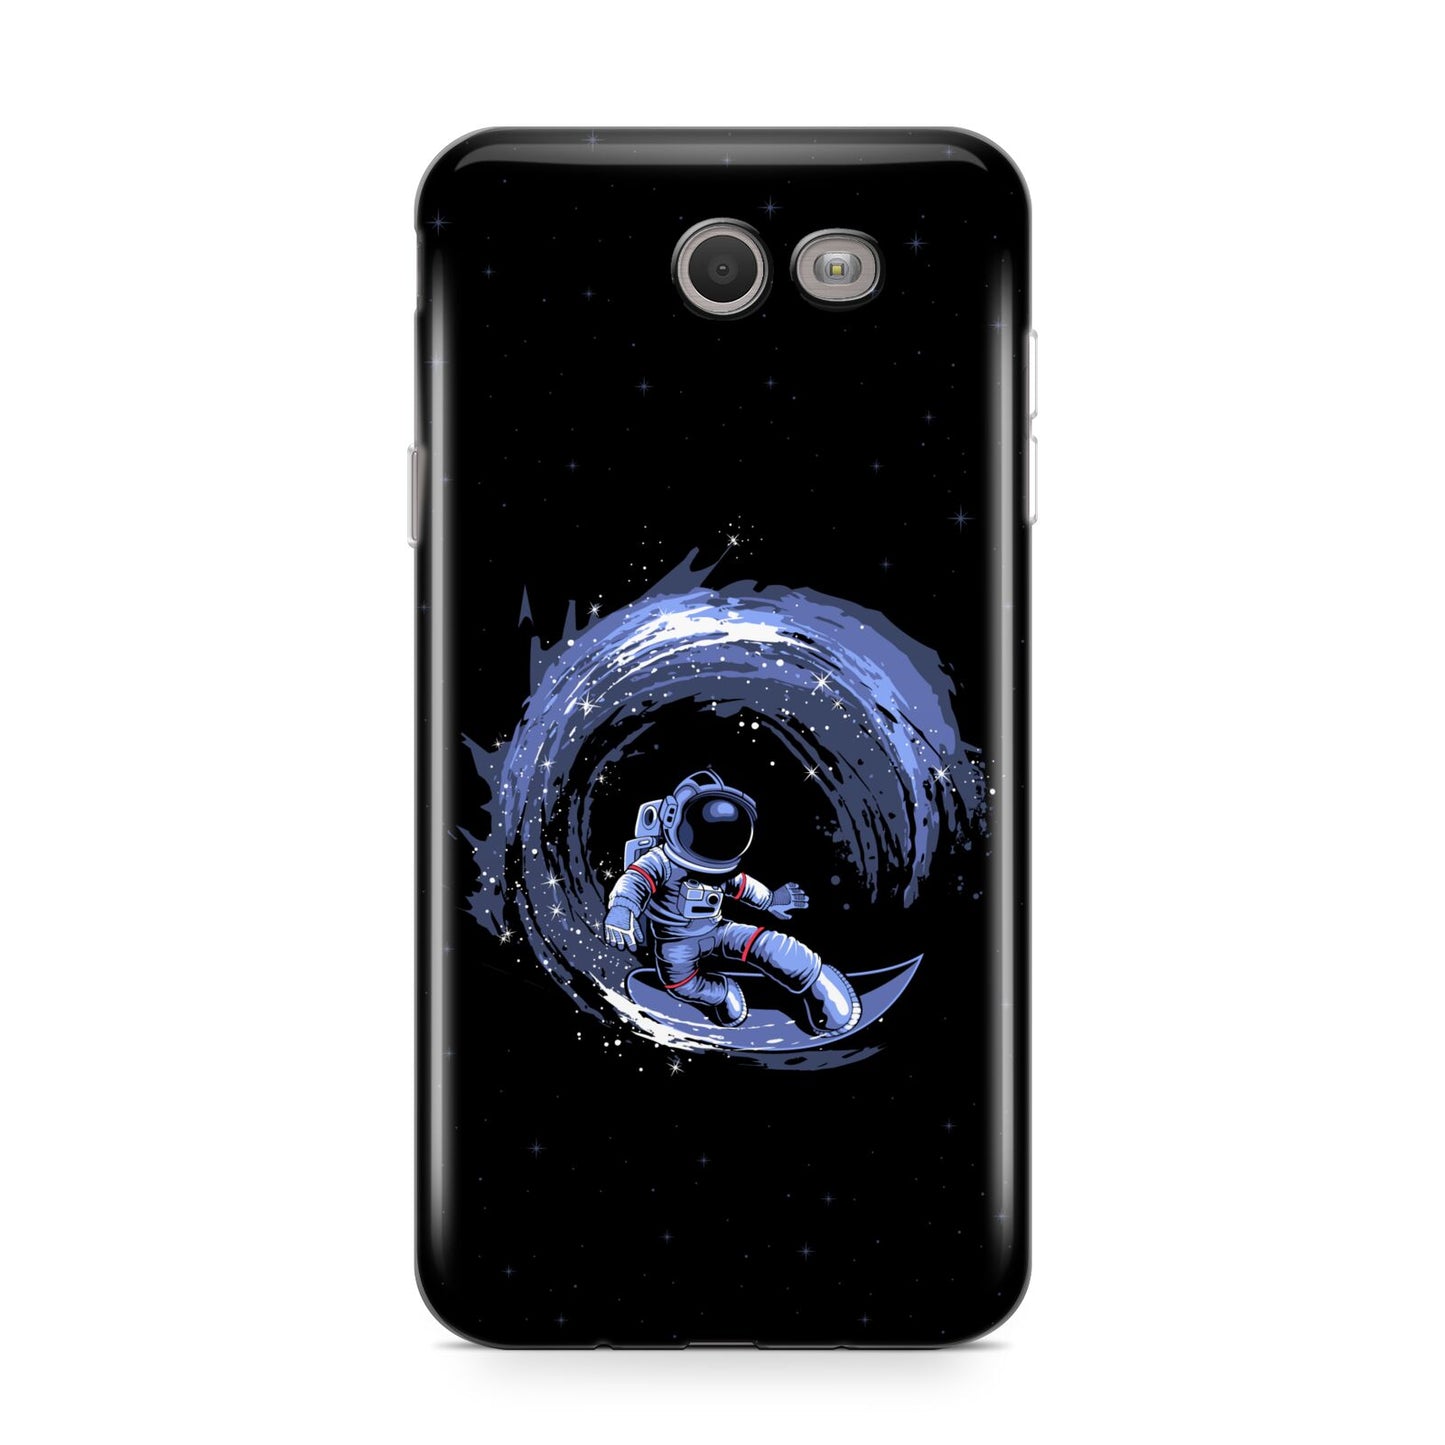 Surfing Astronaut Samsung Galaxy J7 2017 Case